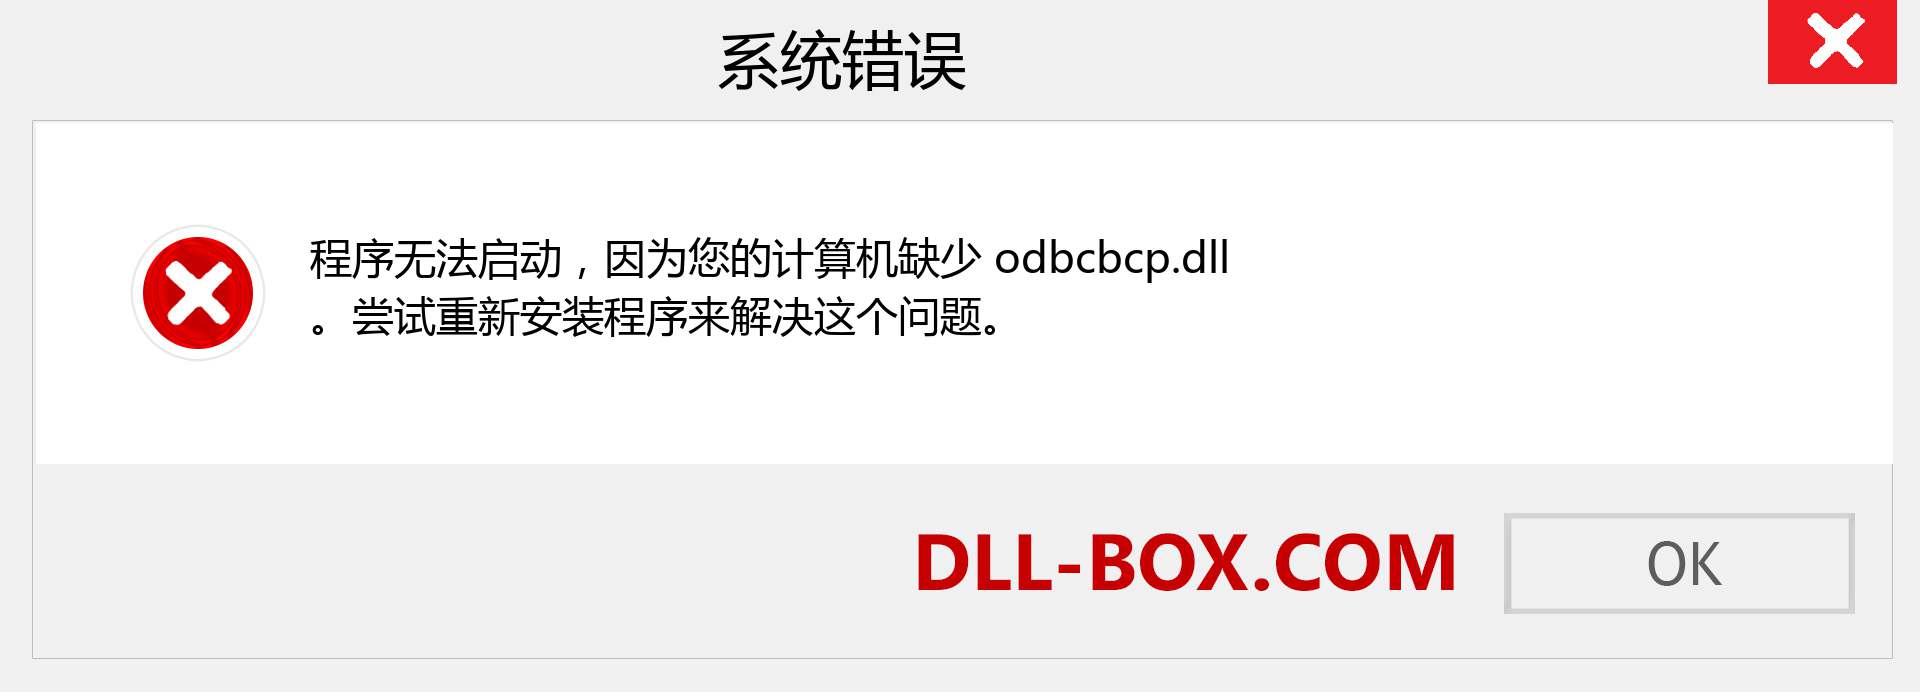 odbcbcp.dll 文件丢失？。 适用于 Windows 7、8、10 的下载 - 修复 Windows、照片、图像上的 odbcbcp dll 丢失错误